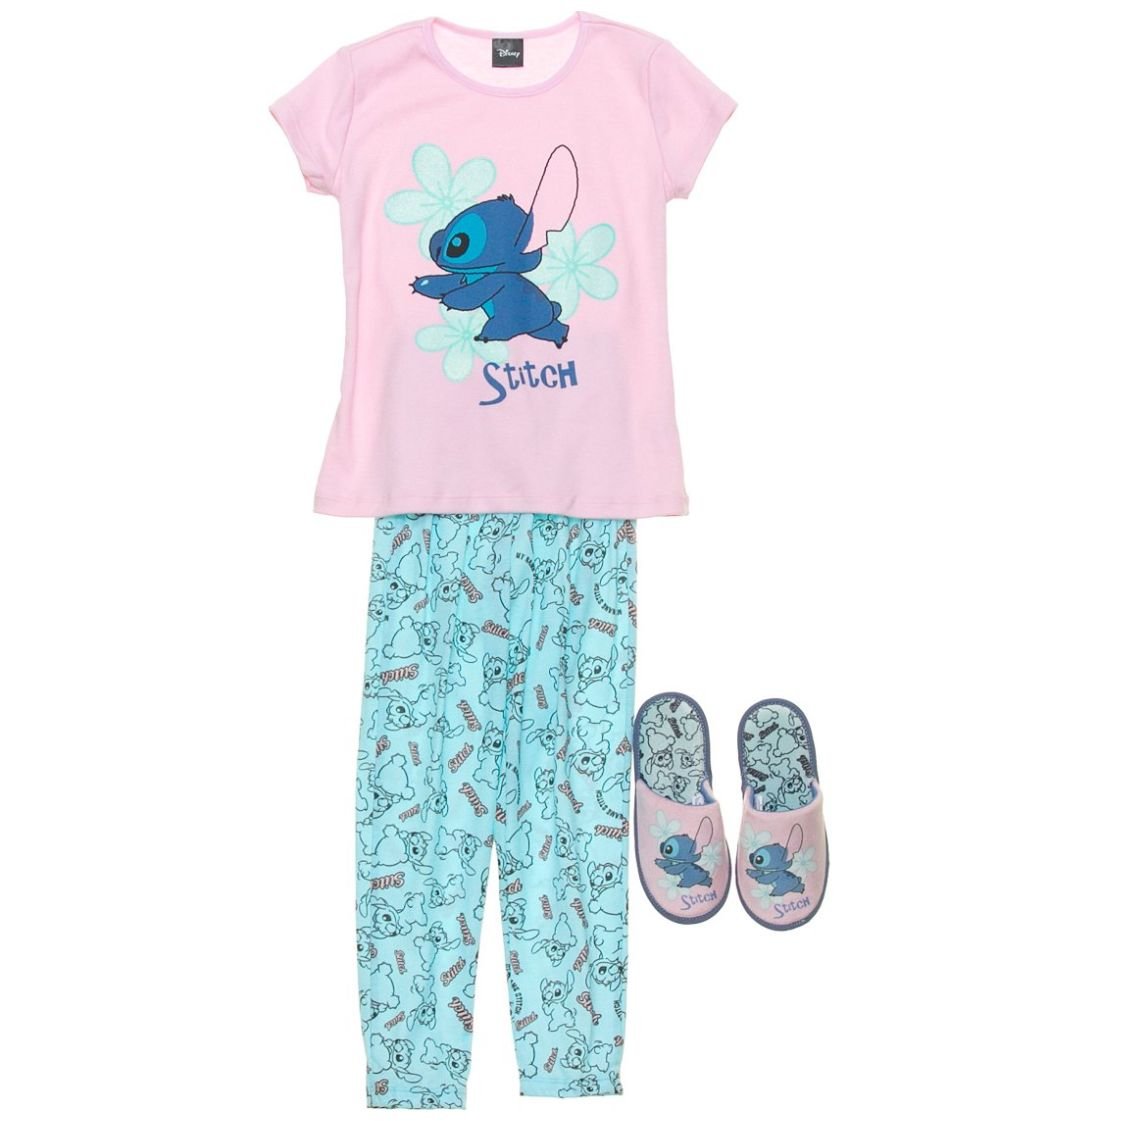 Pijama Stitch Manga Larga Niños Niñas Personalizados